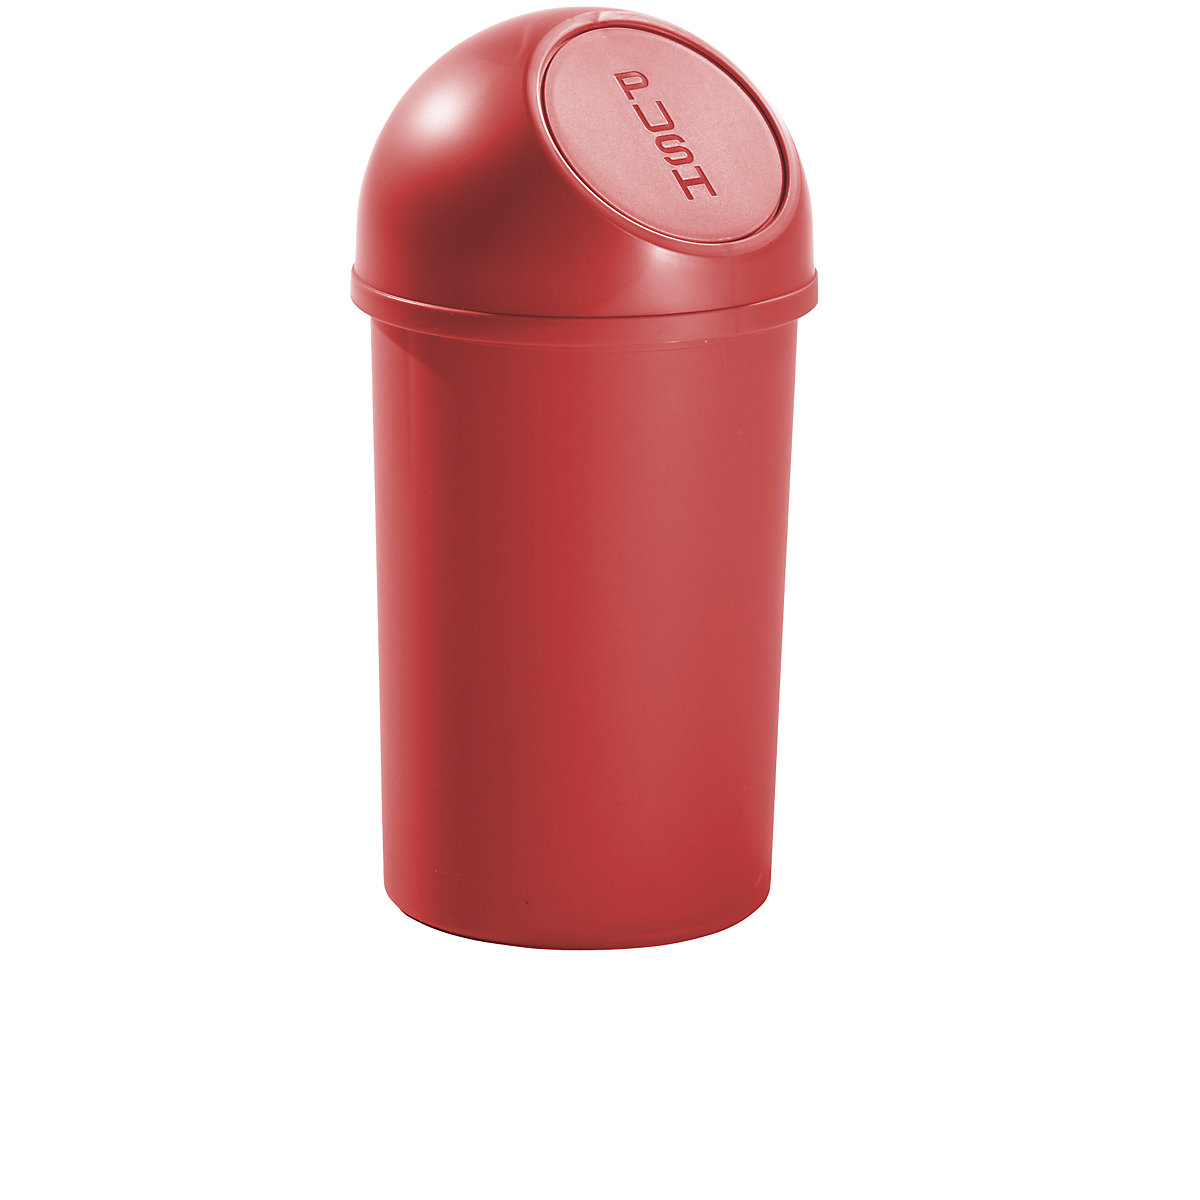 helit – Poubelle à trappe en plastique, capacité 13 l, h x Ø 490 x 252 mm, rouge, lot de 6